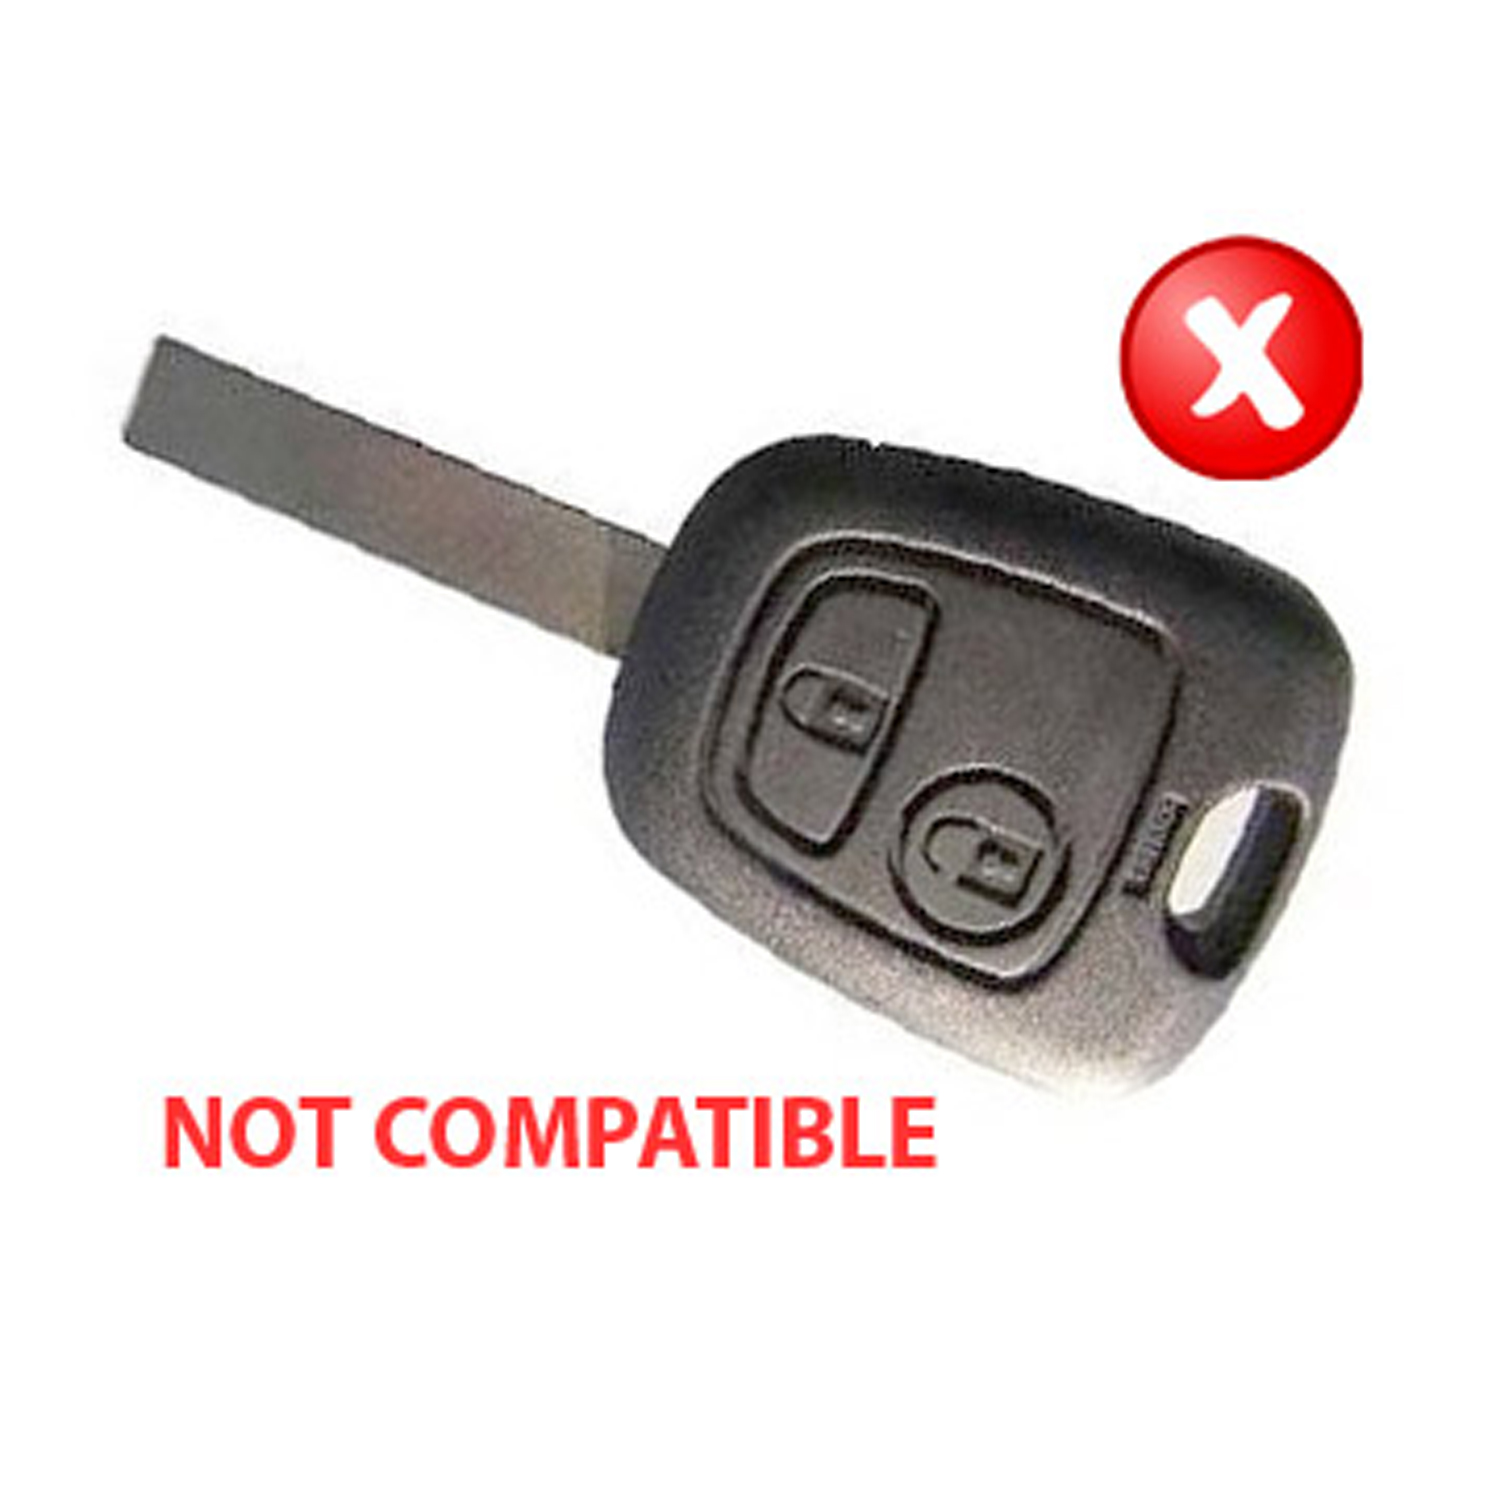 Peugeot 307 CC Not Compatible Two button key